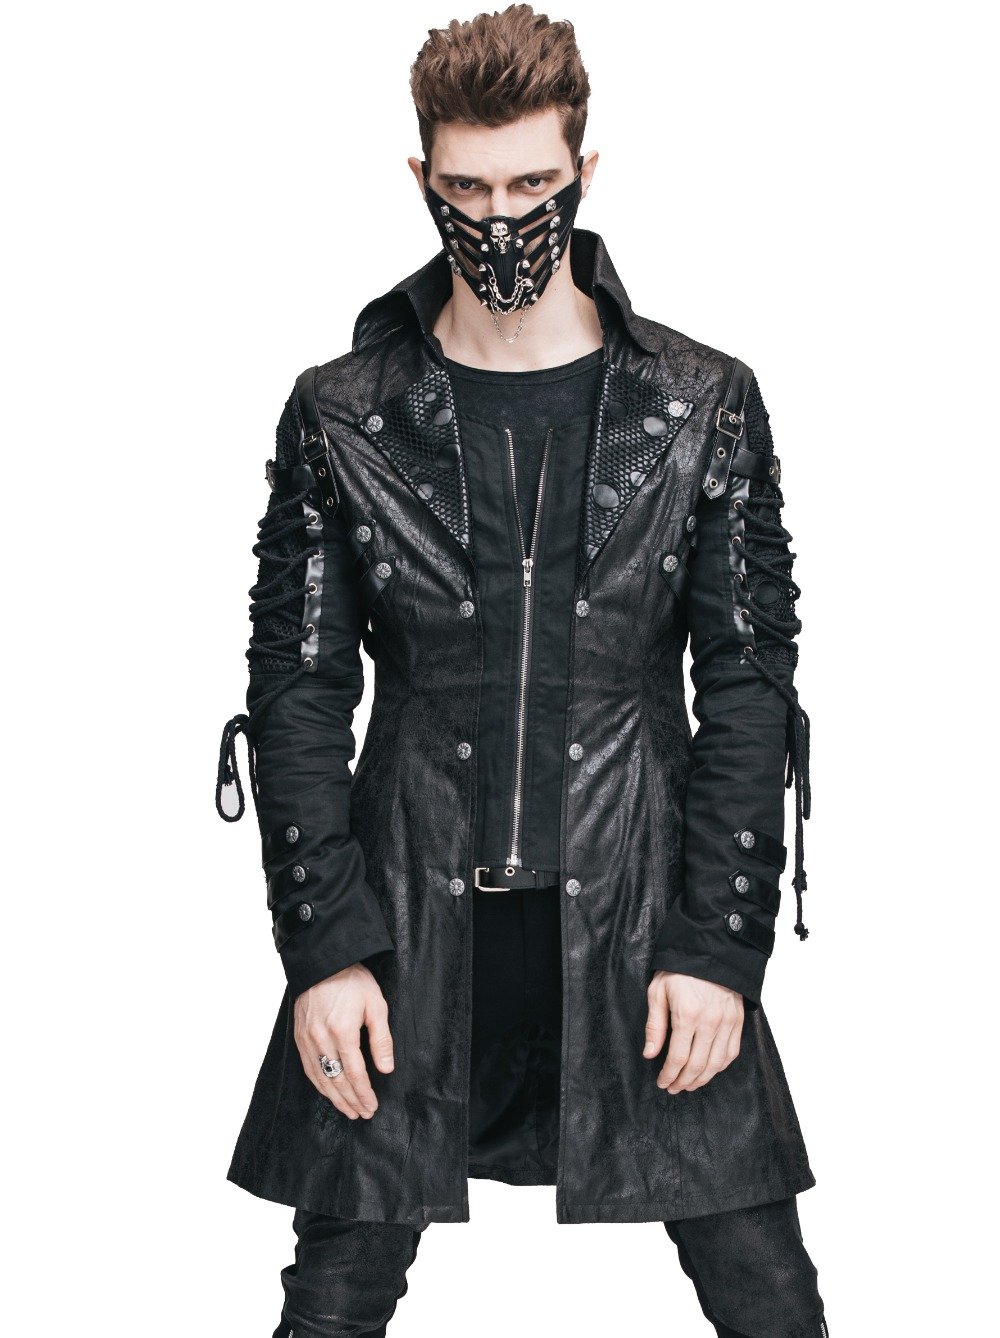 особая одежда cyberpunk фото 55